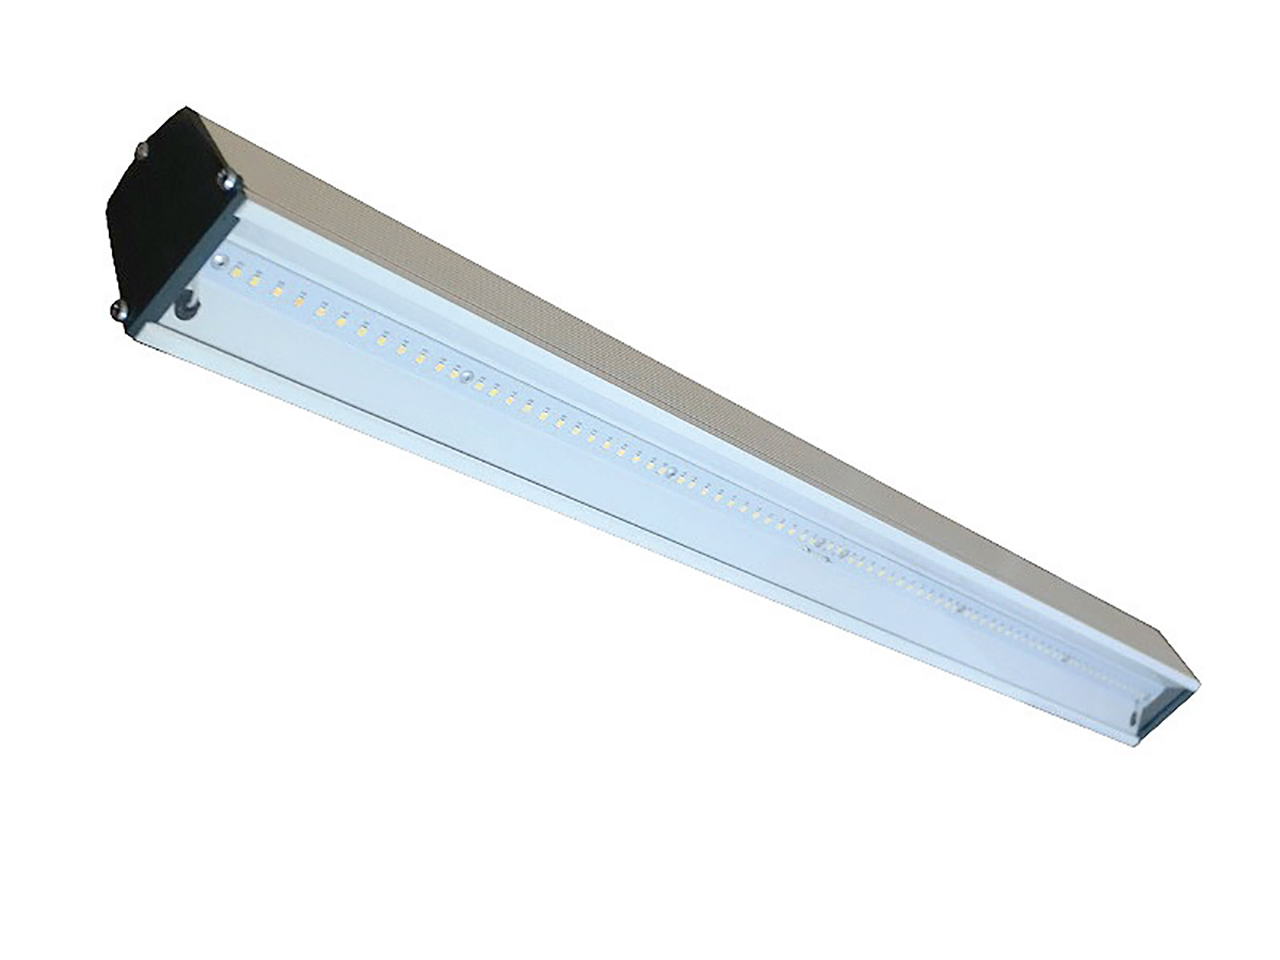 Светконсалт. Светодиодный светильник TL-Prom trade 50 o l 1550 ip65 5k. Светодиодный линейный промышленный светильник 10 ватт. Линейные светодиодные светильники в алюминиевом корпусе.